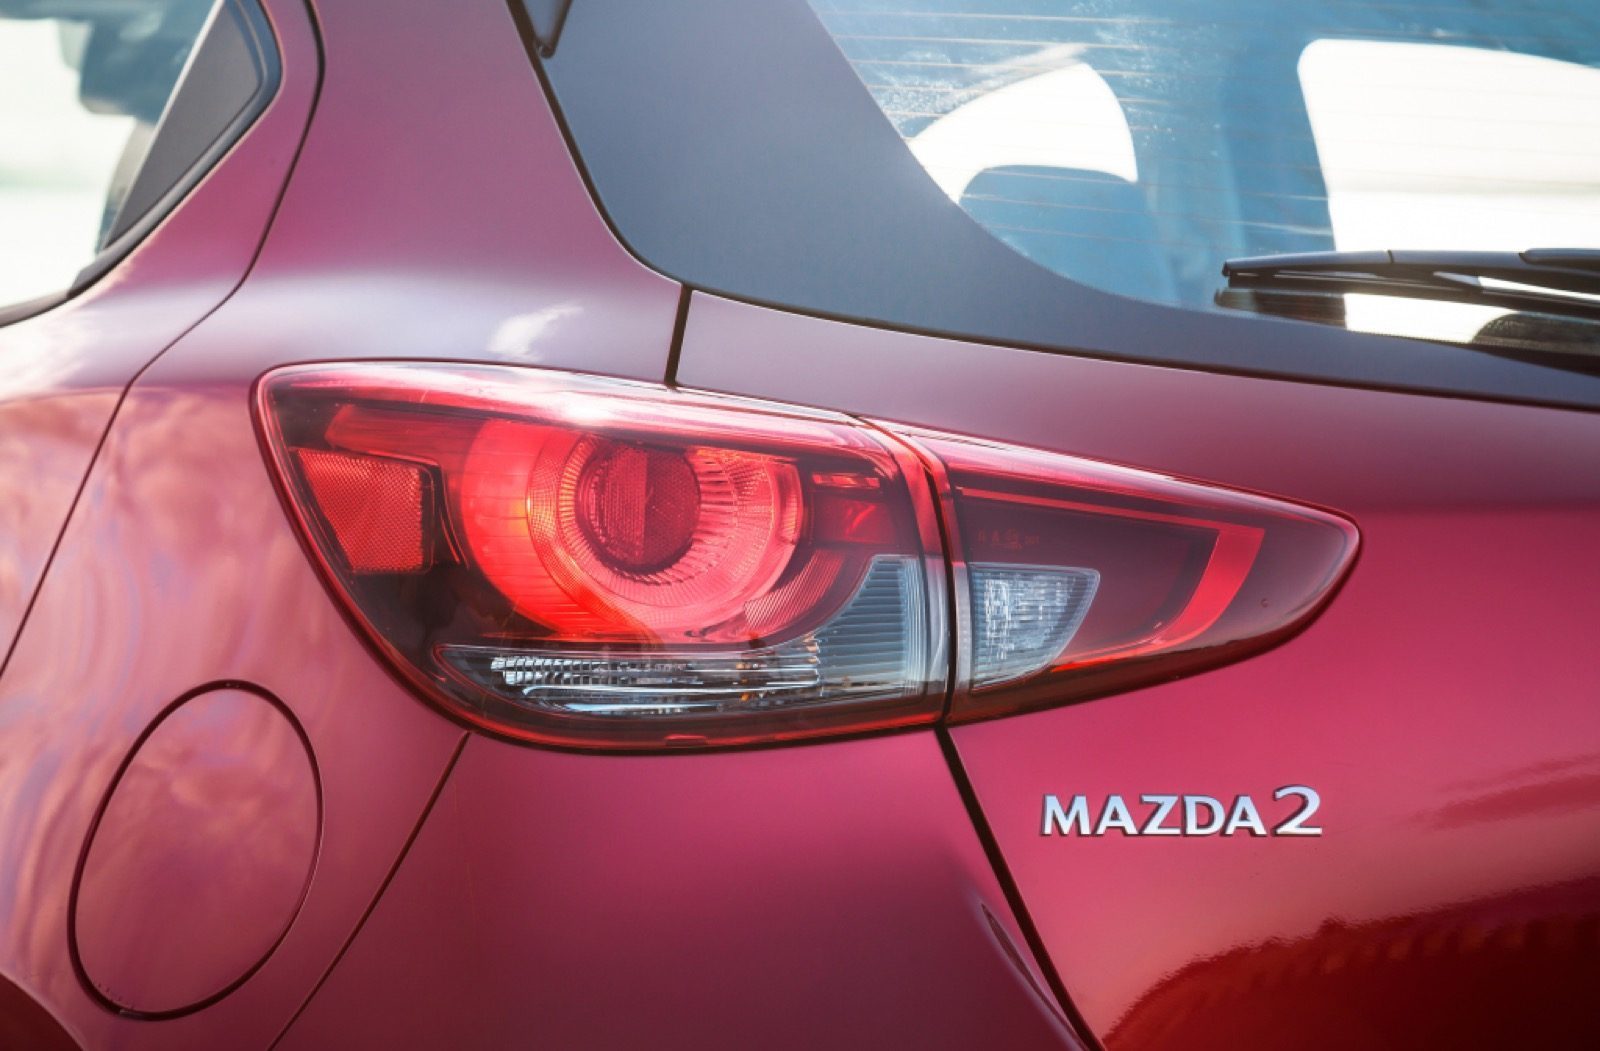 nieuwe Mazda 2